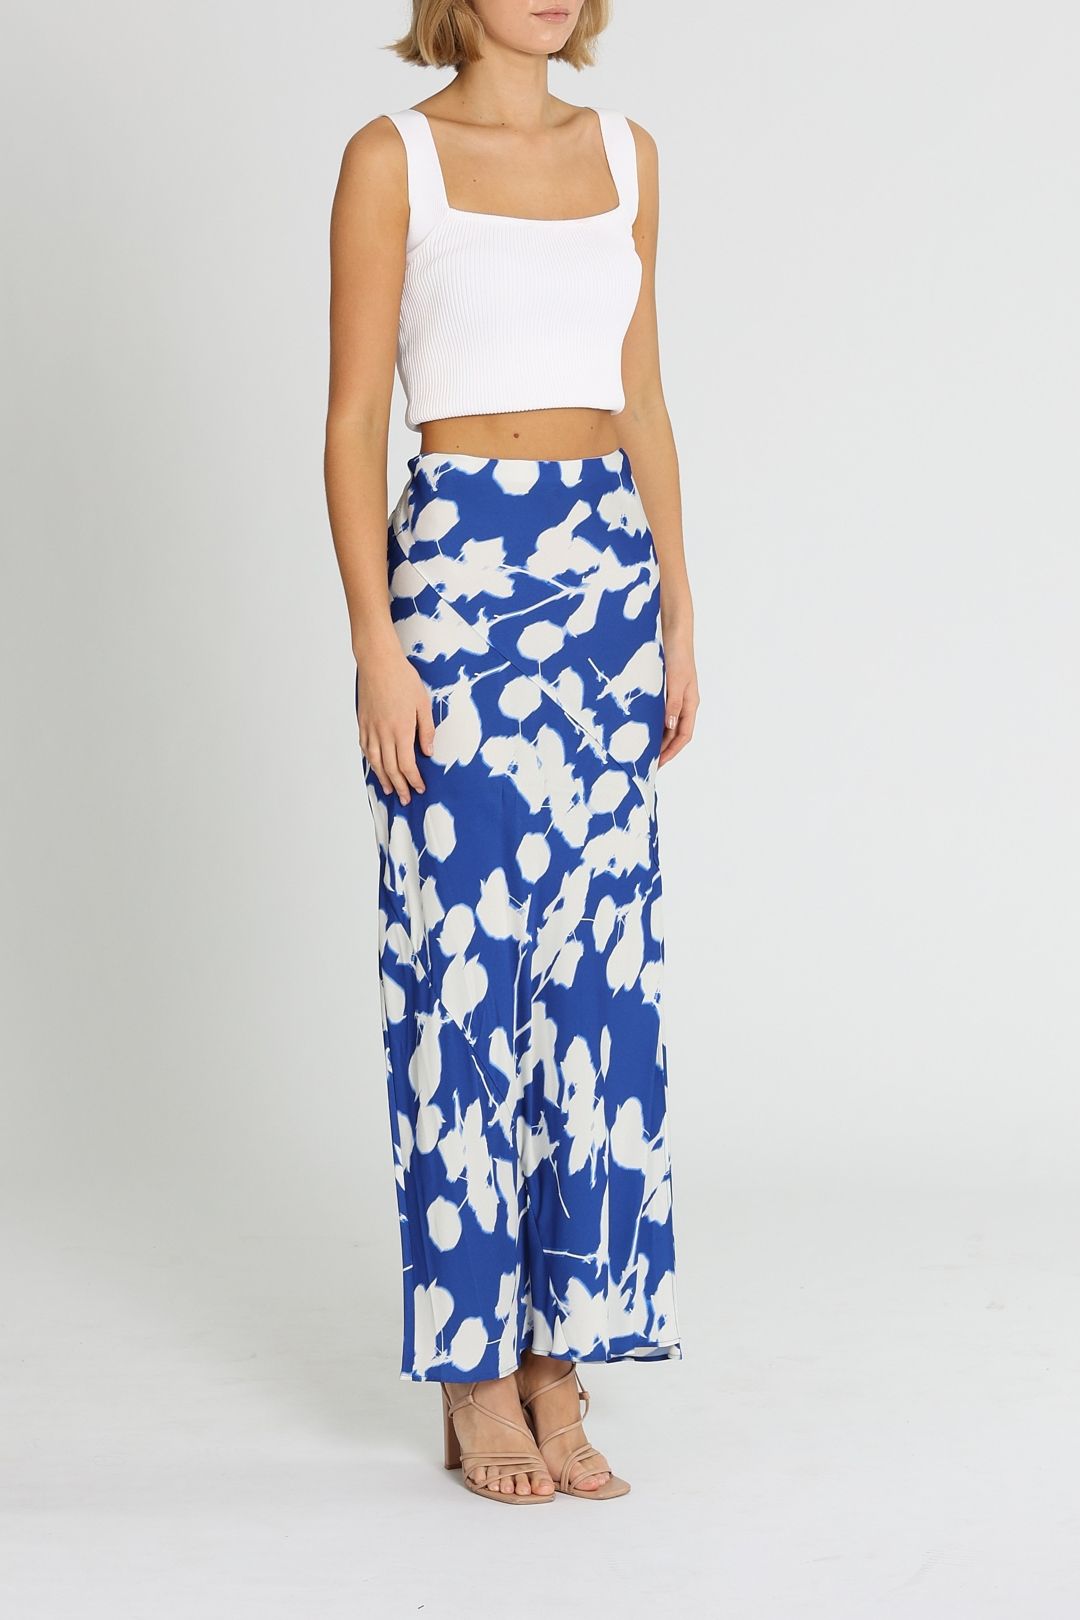 Calvin Klein Floral Print Midi Skirt Blue